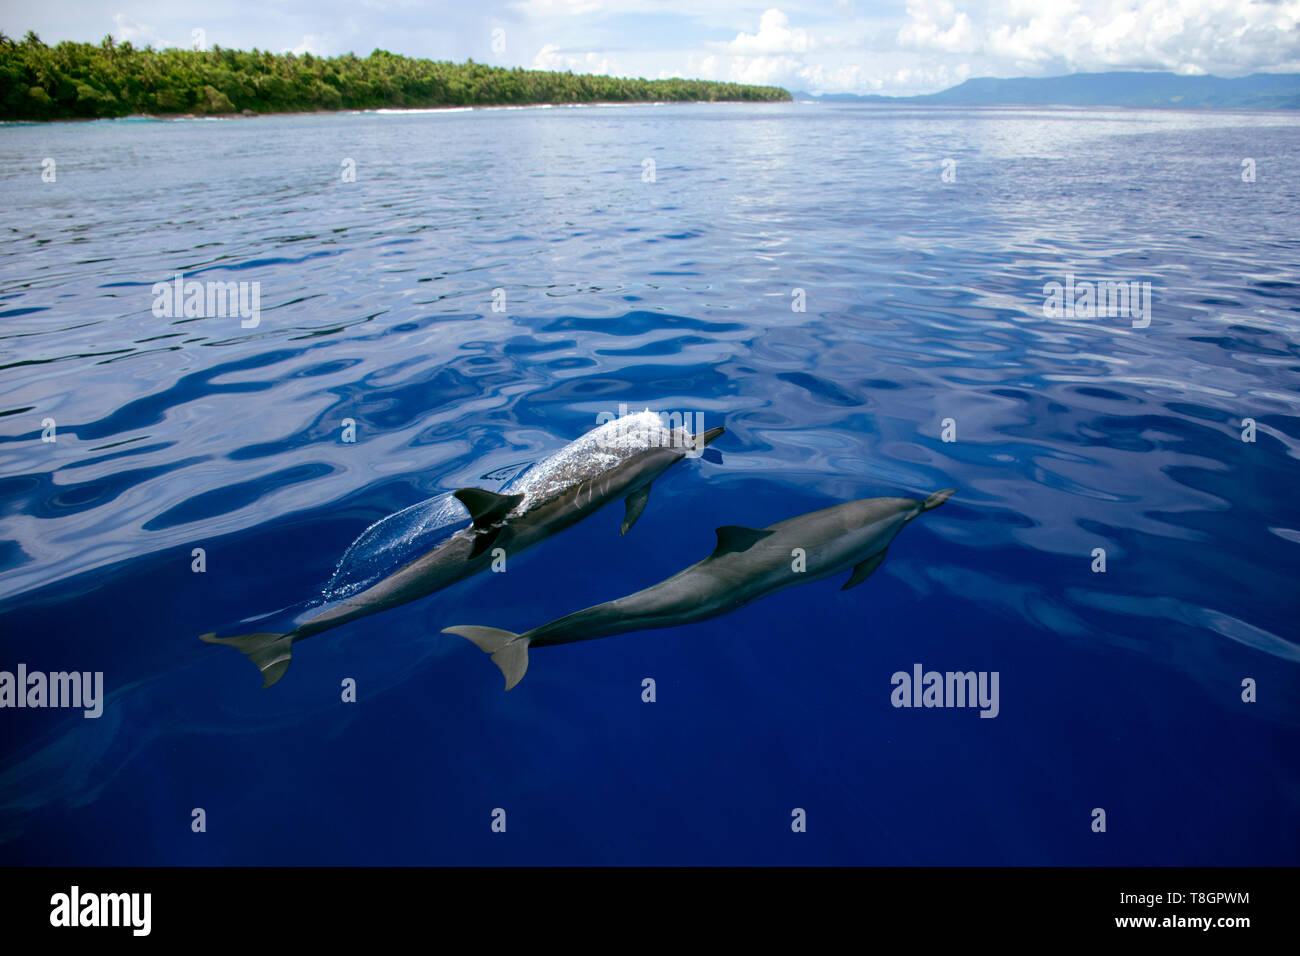 Delfines, Stenella longirostris, Ant Atoll, Pohnpei, Estados Federados de Micronesia Foto de stock